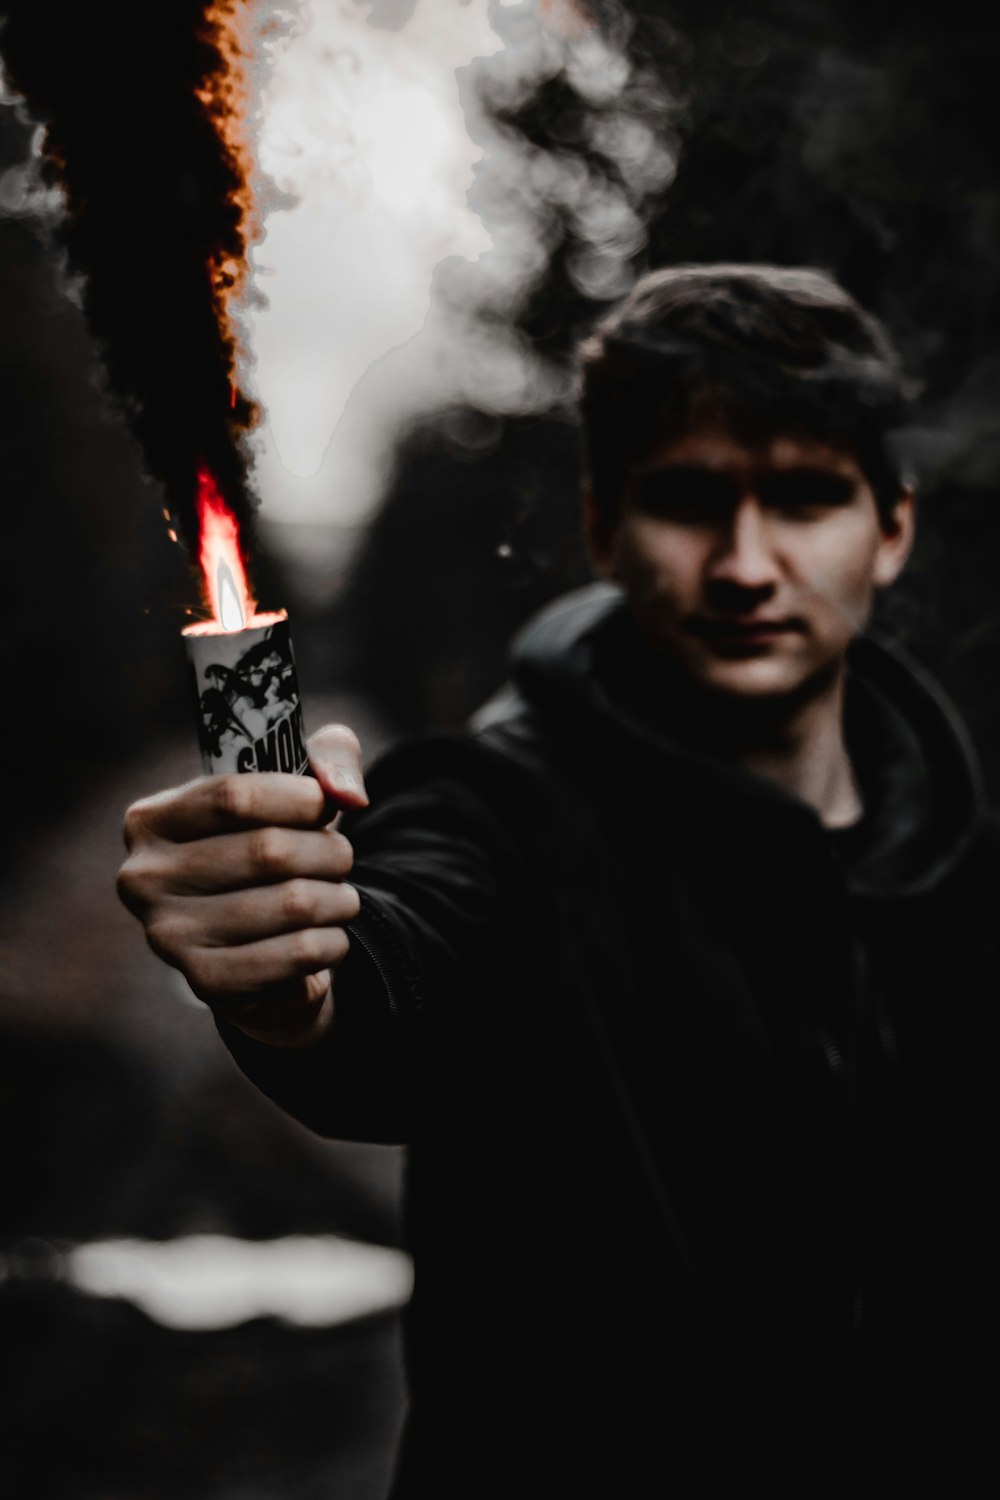 Mann in schwarzem Kapuzenpullover mit Feuerzeug